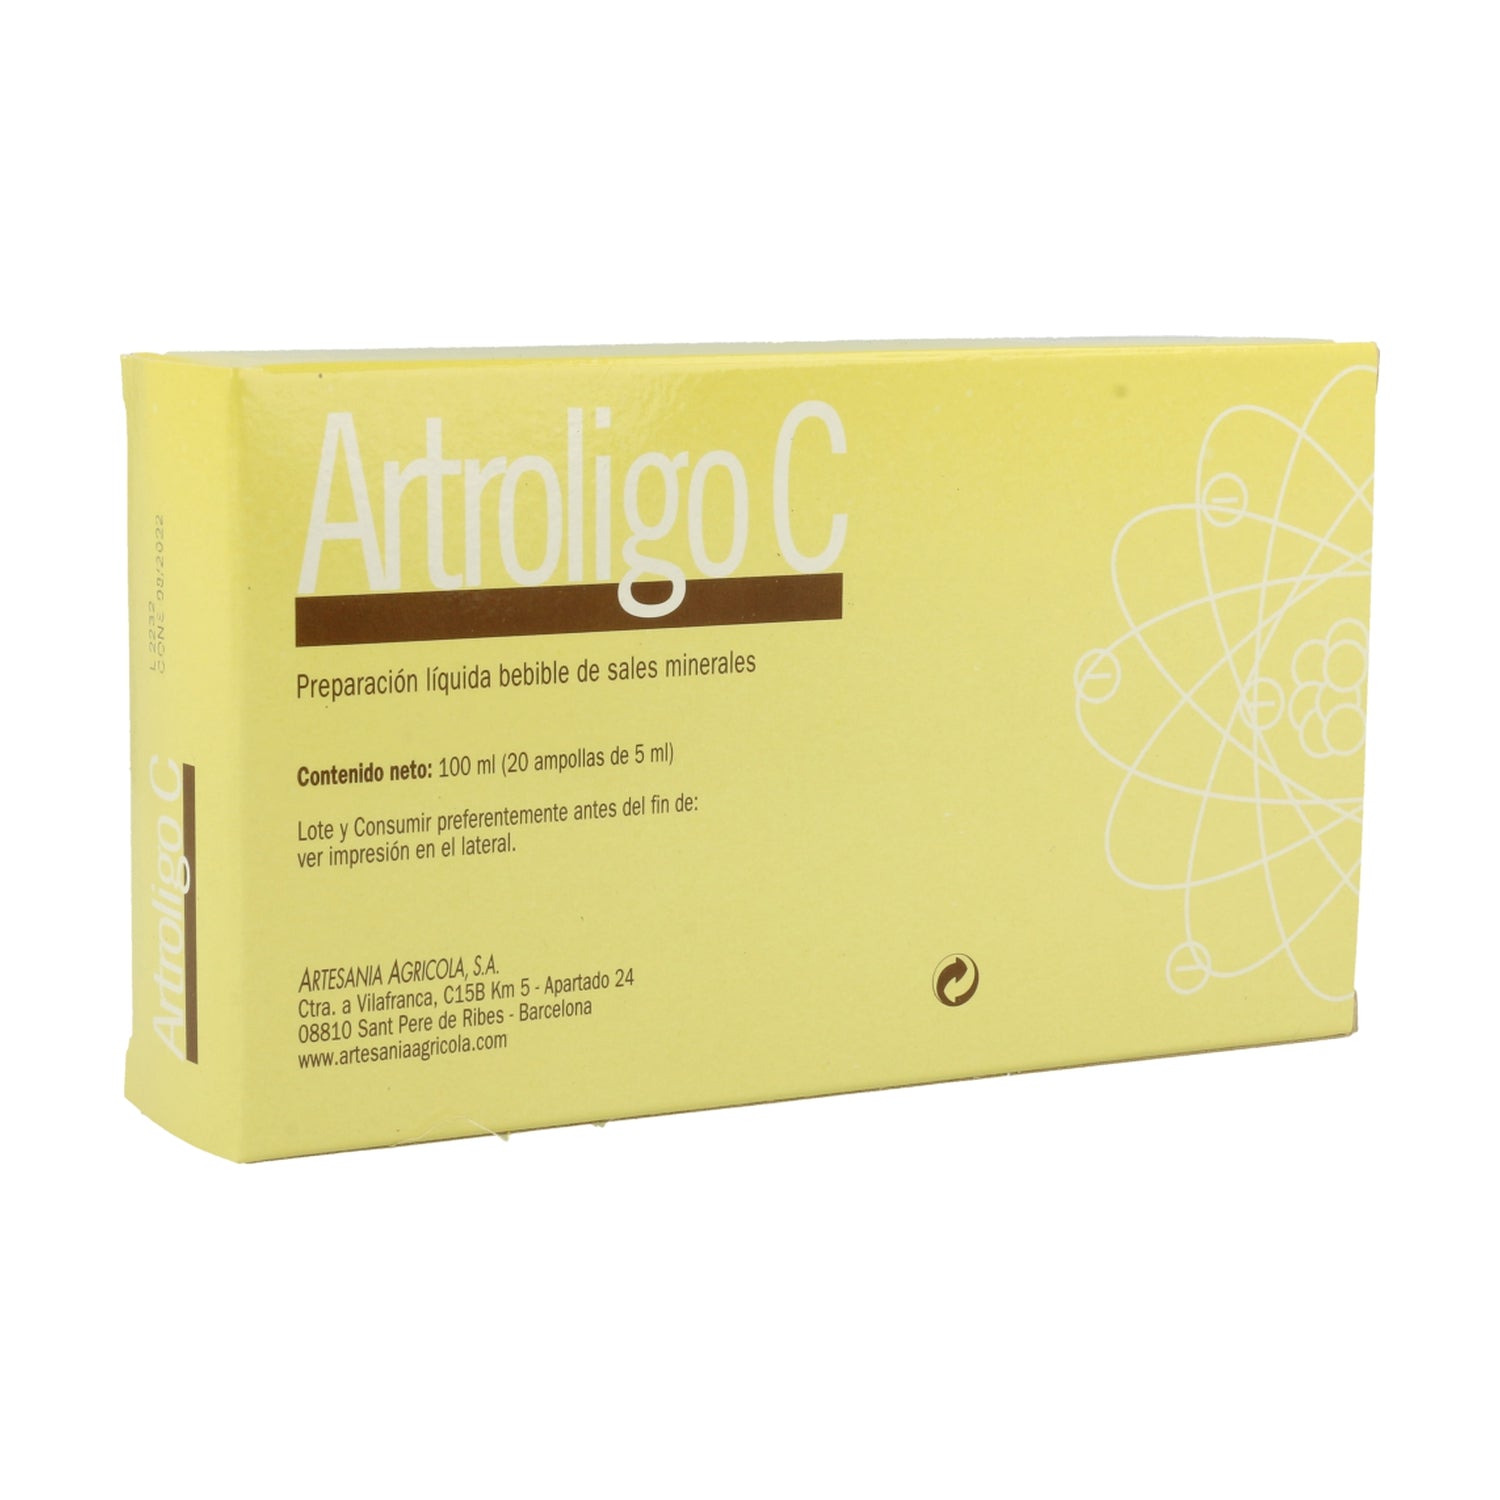 Plantis-Artroligo-C-20-Ampollas-Biopharmacia,-Parafarmacia-online